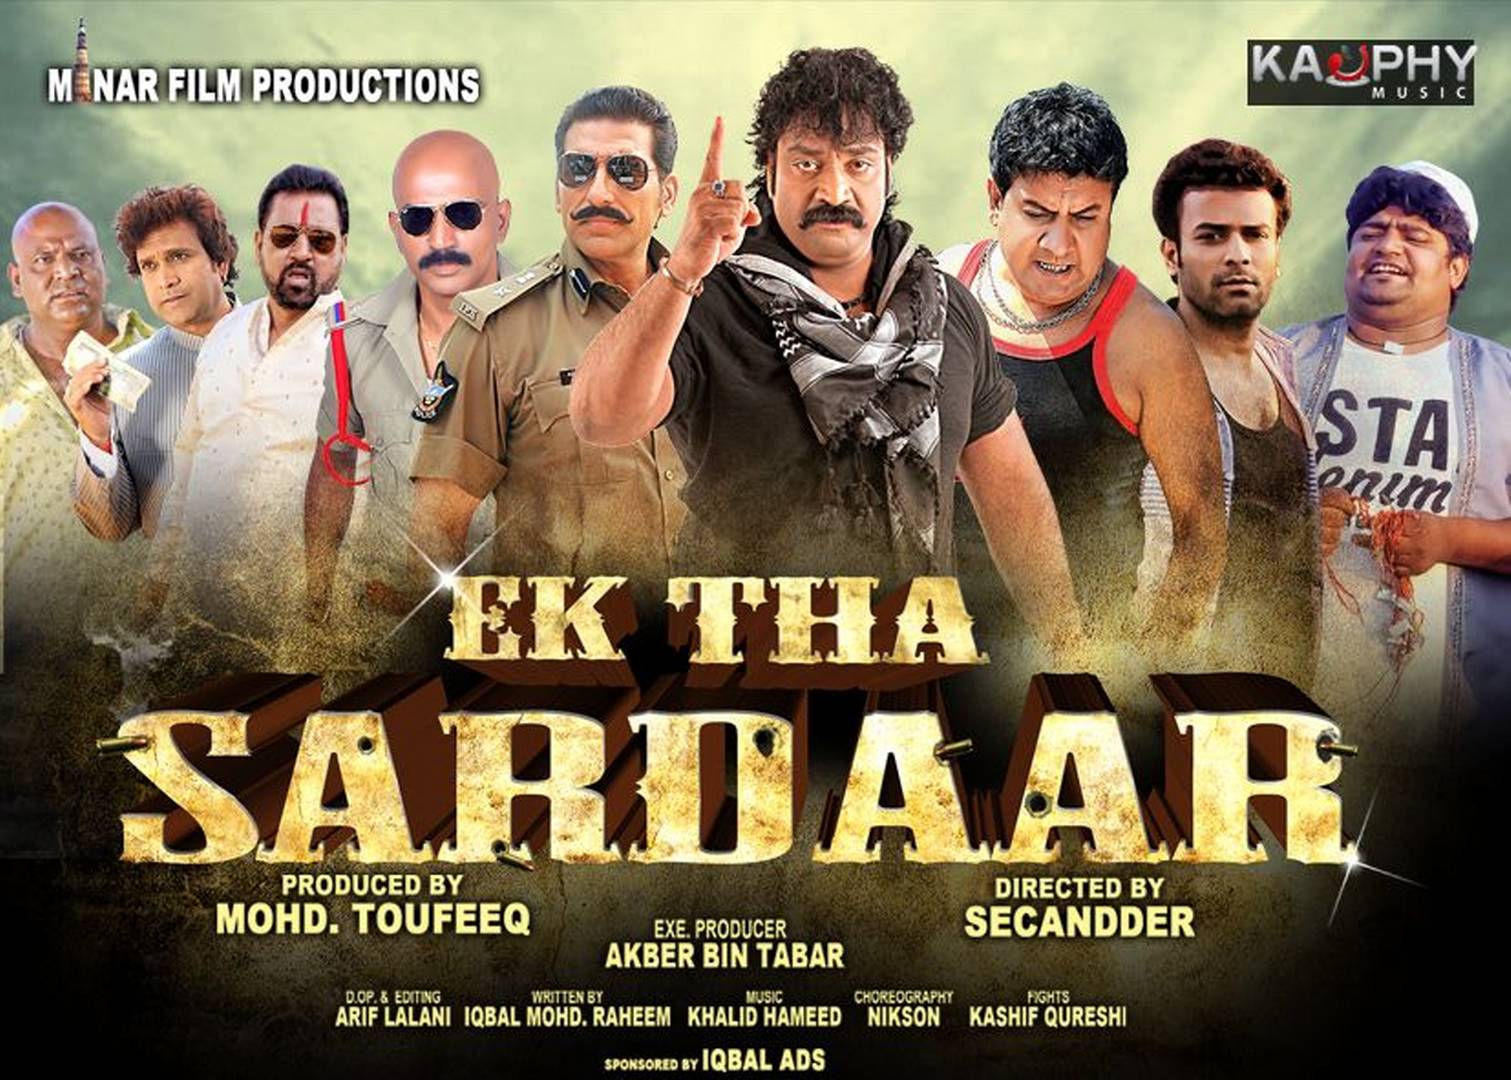 Photo 8of 10 | Ek tha Sardaar Movie posters | Ek tha Sardaar Wallpapers | Ek tha Sardaar Movie new wallpapers.